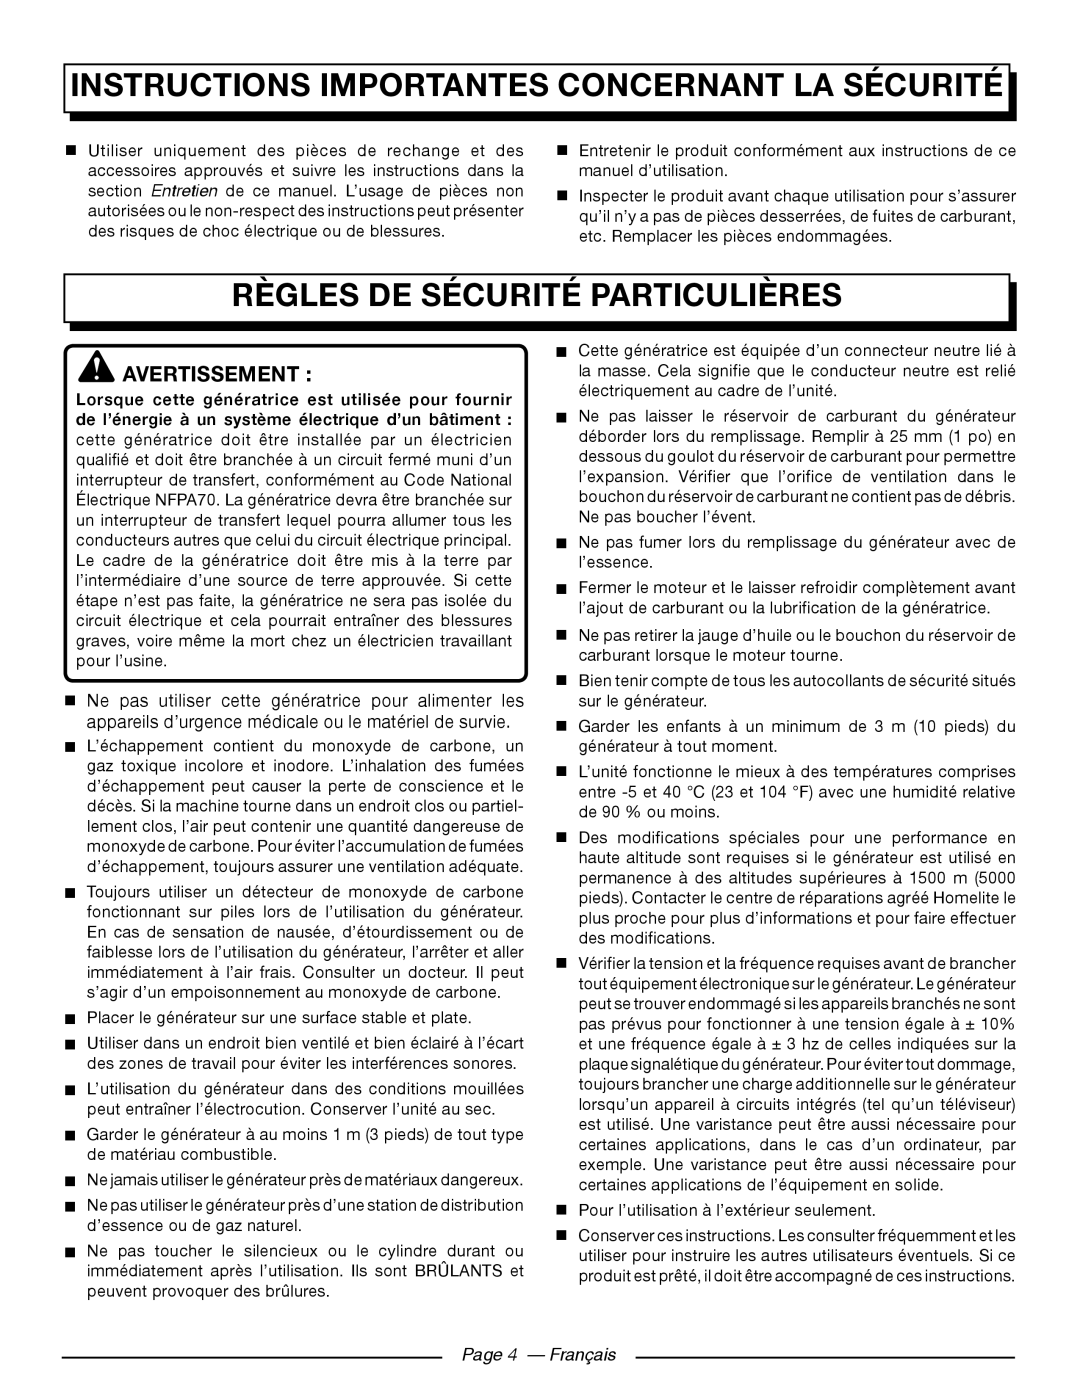 Homelite UT902250 Règles De Sécurité Particulières, Page 4 - Français, Instructions Importantes Concernant La Sécurité 